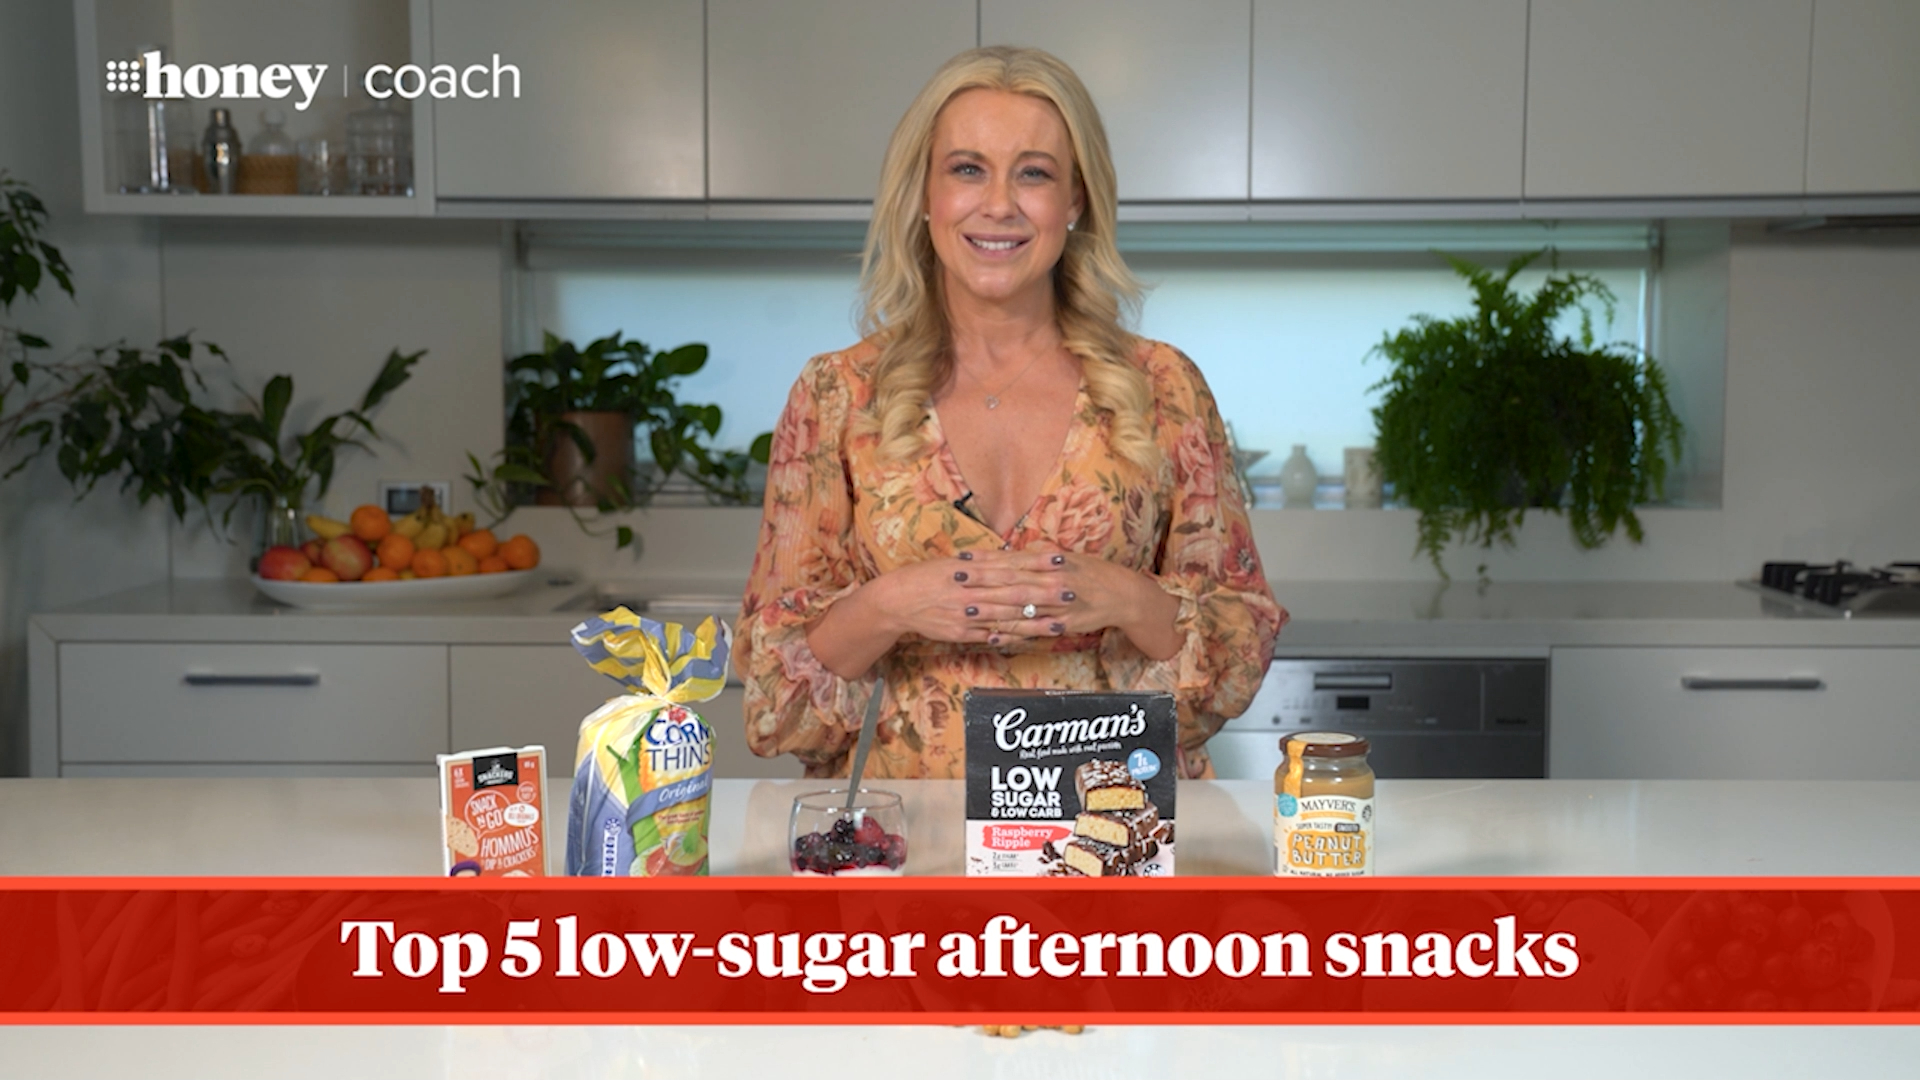 Dietitian's top 5 low-sugar afternoon snacks